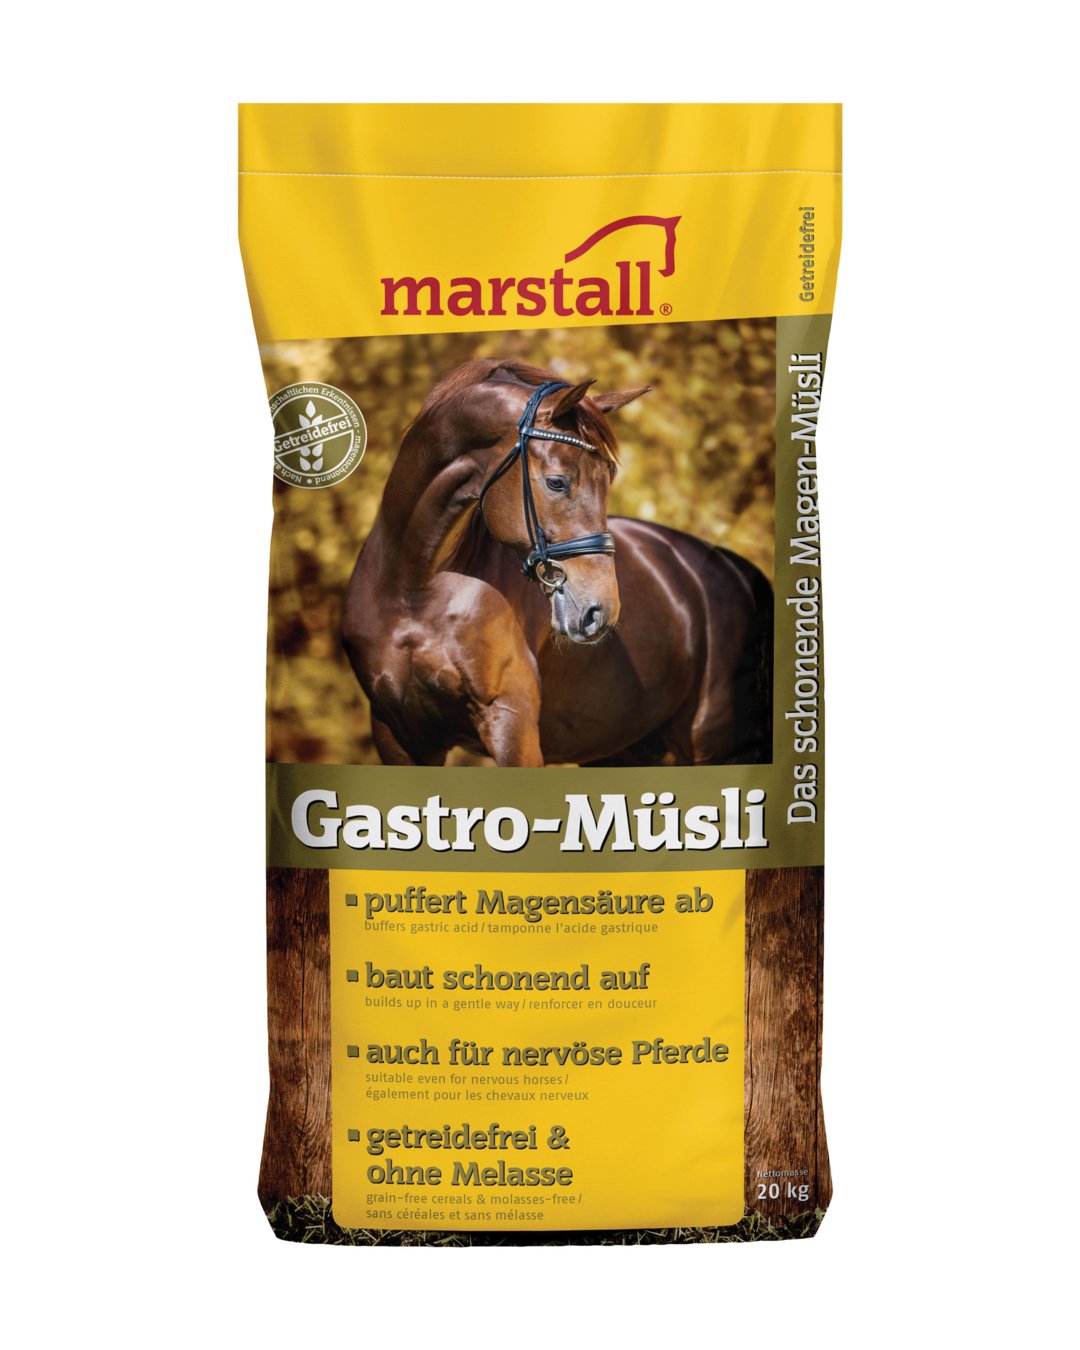 Gastro-Müsli